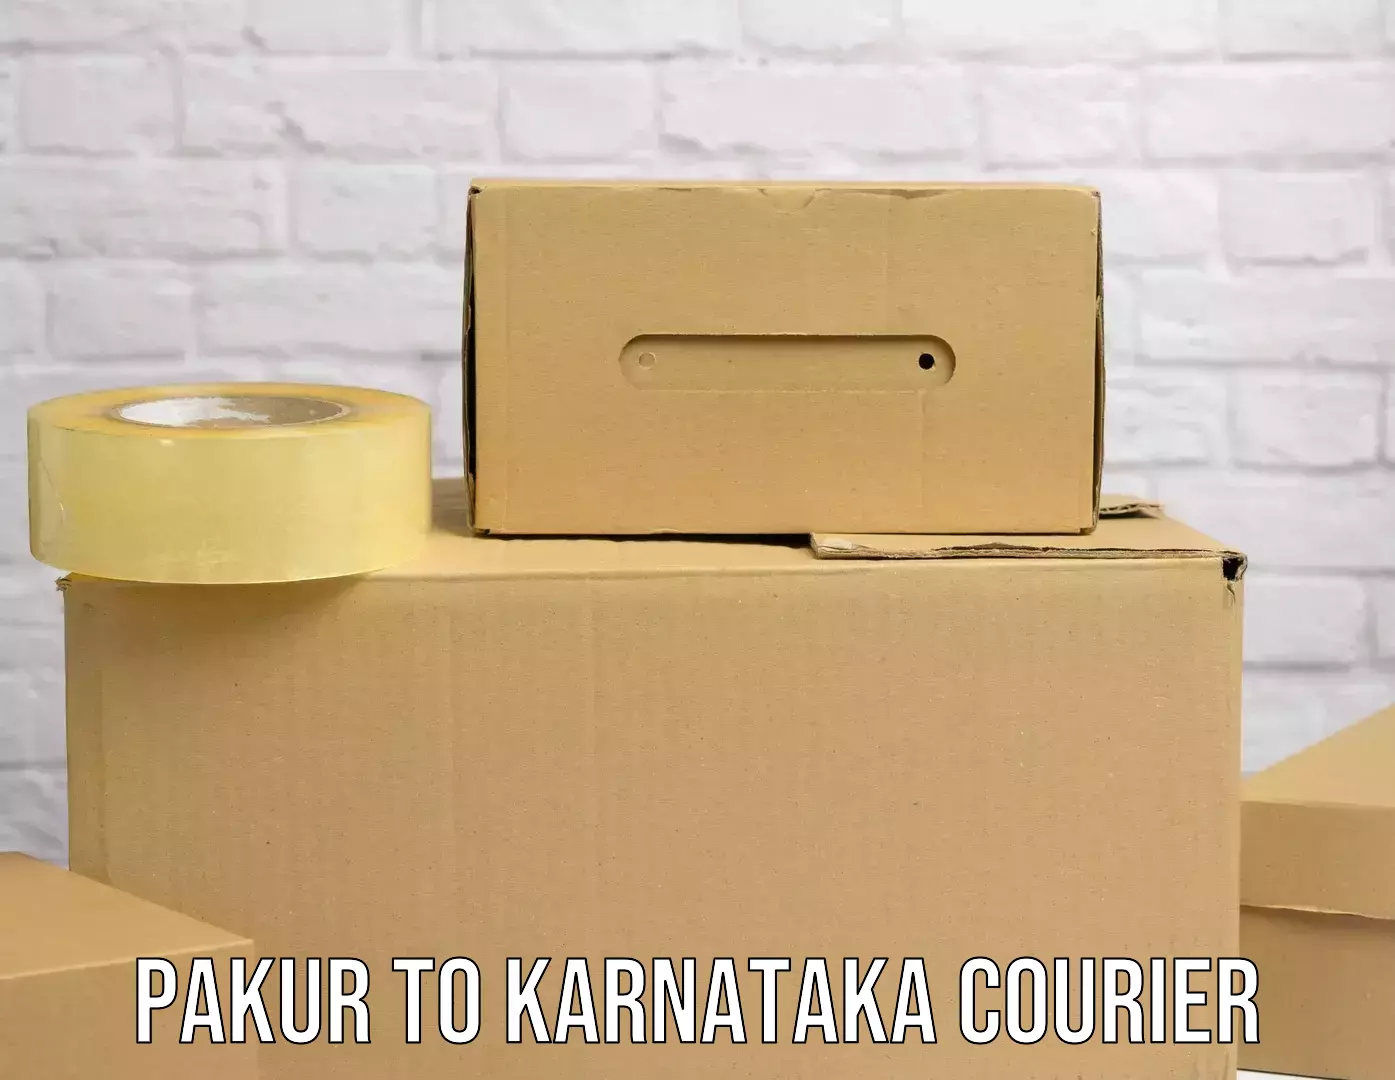 Premium courier services Pakur to Ankola